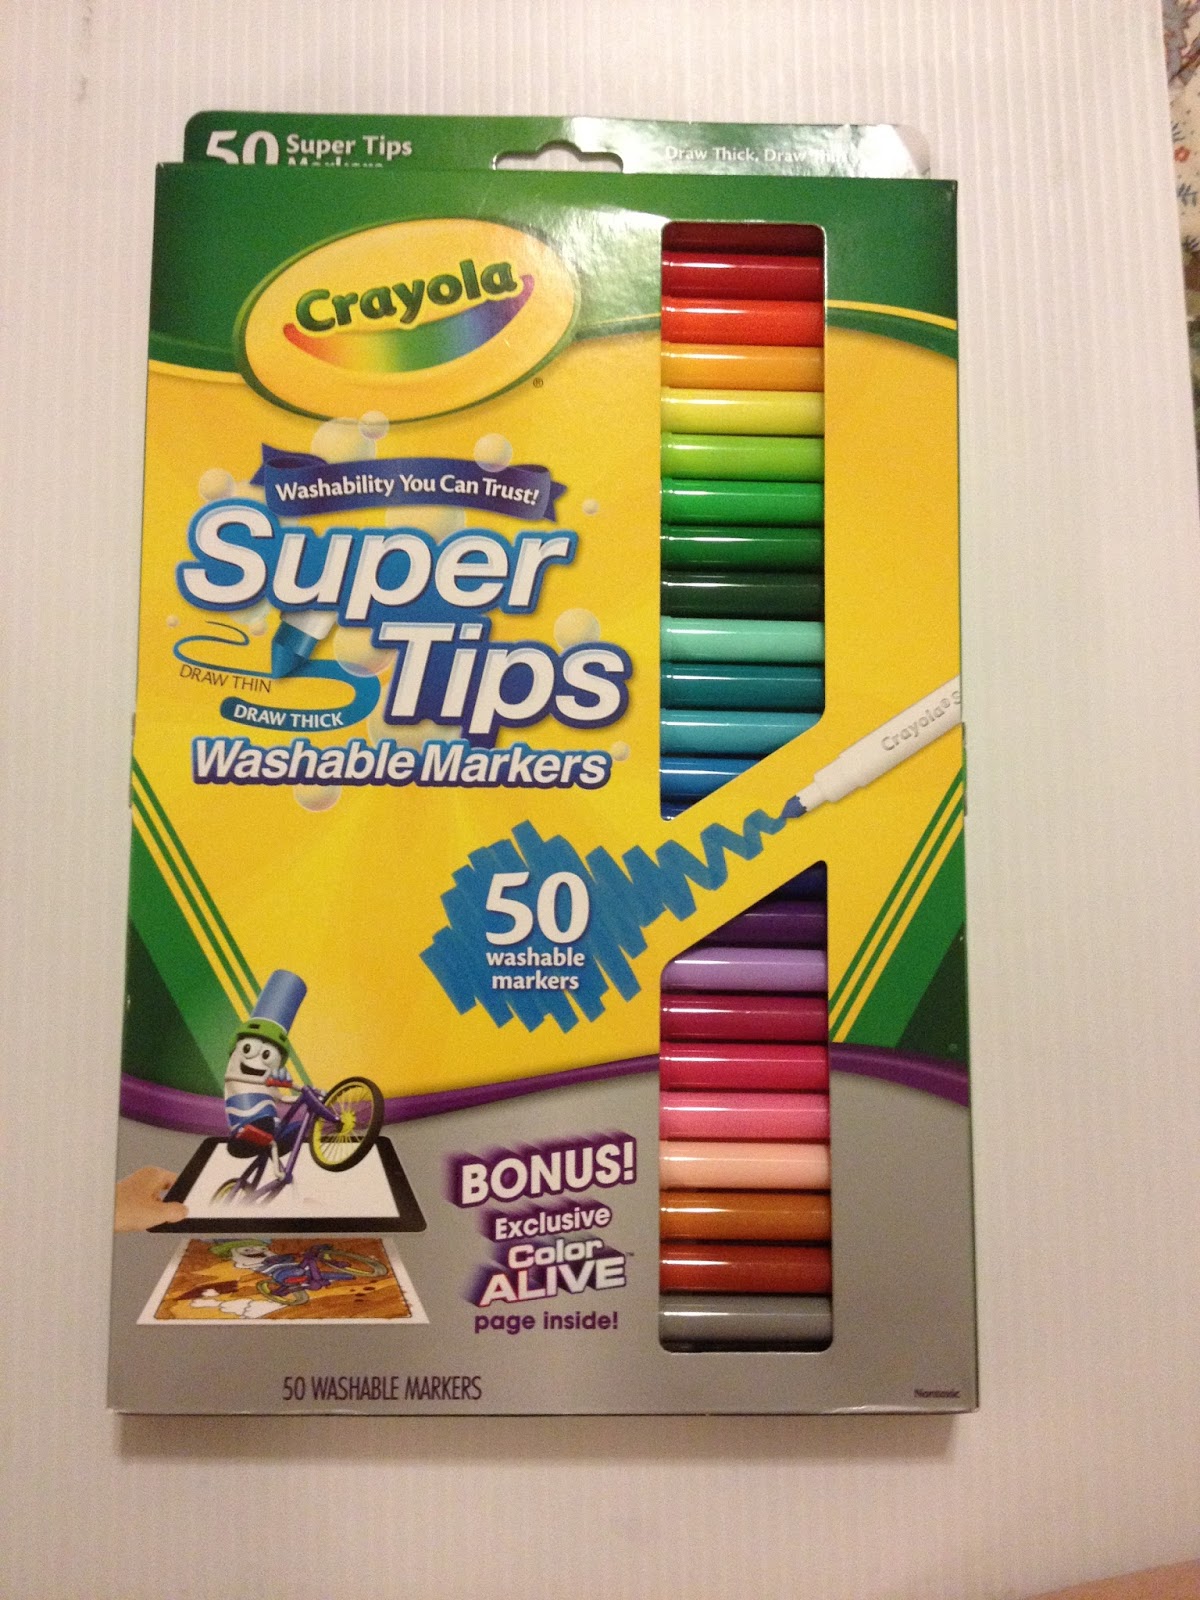 Washable Marker Set, 64 Coloring Supplies, Crayola.com